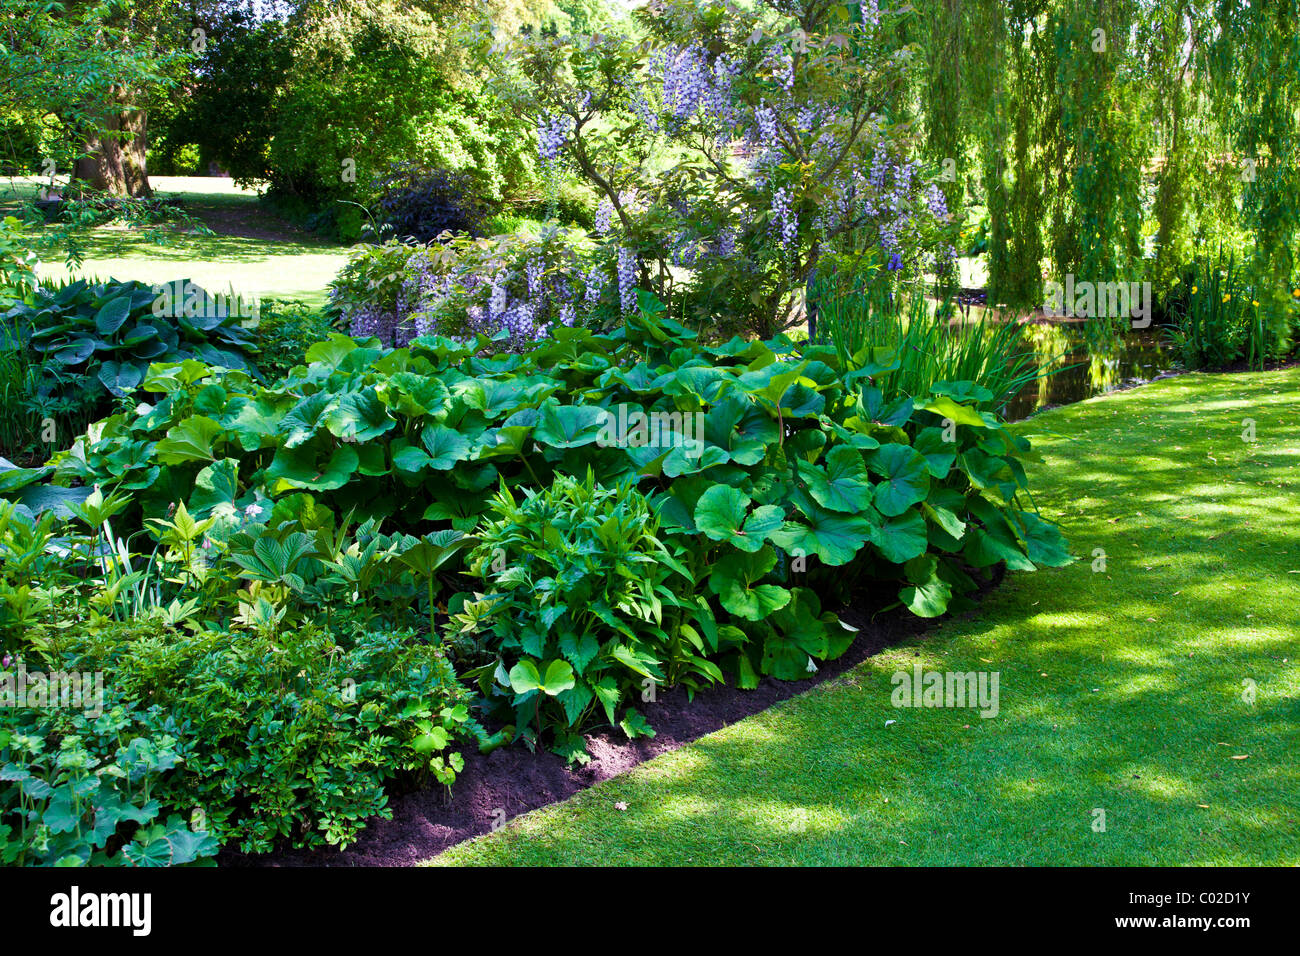 Ufer des ornamentalen Gartenteich in einem englischen Landhaus-Garten mit Trauerweide oder Glyzinien und Riesen Rhabarber Gunnera manicata Stockfoto